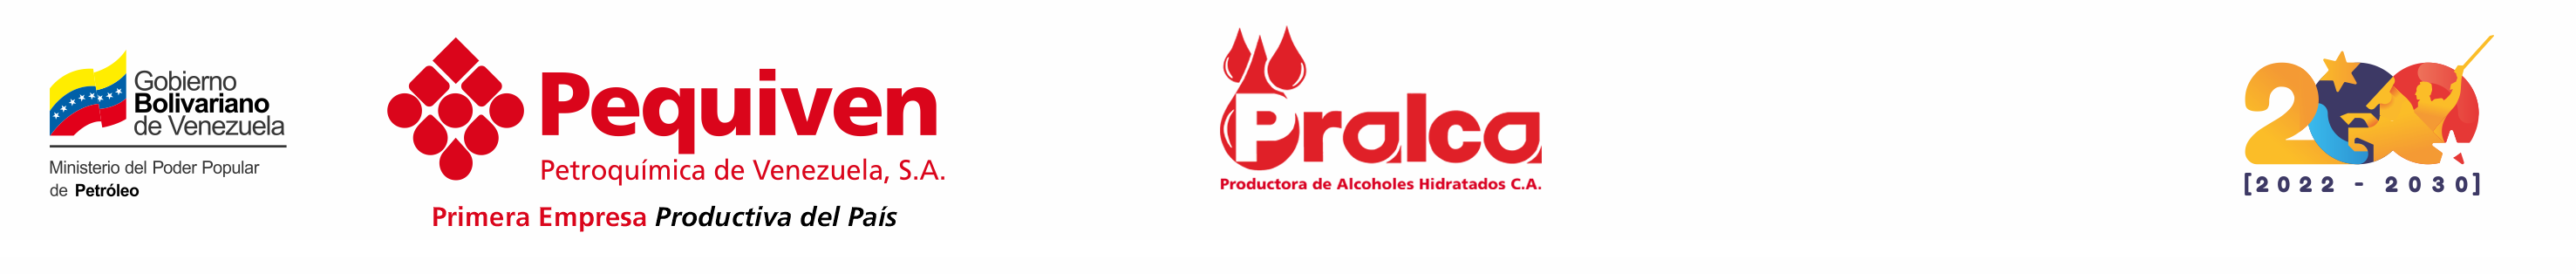 Productora de Alcoholes Hidratados C.A.